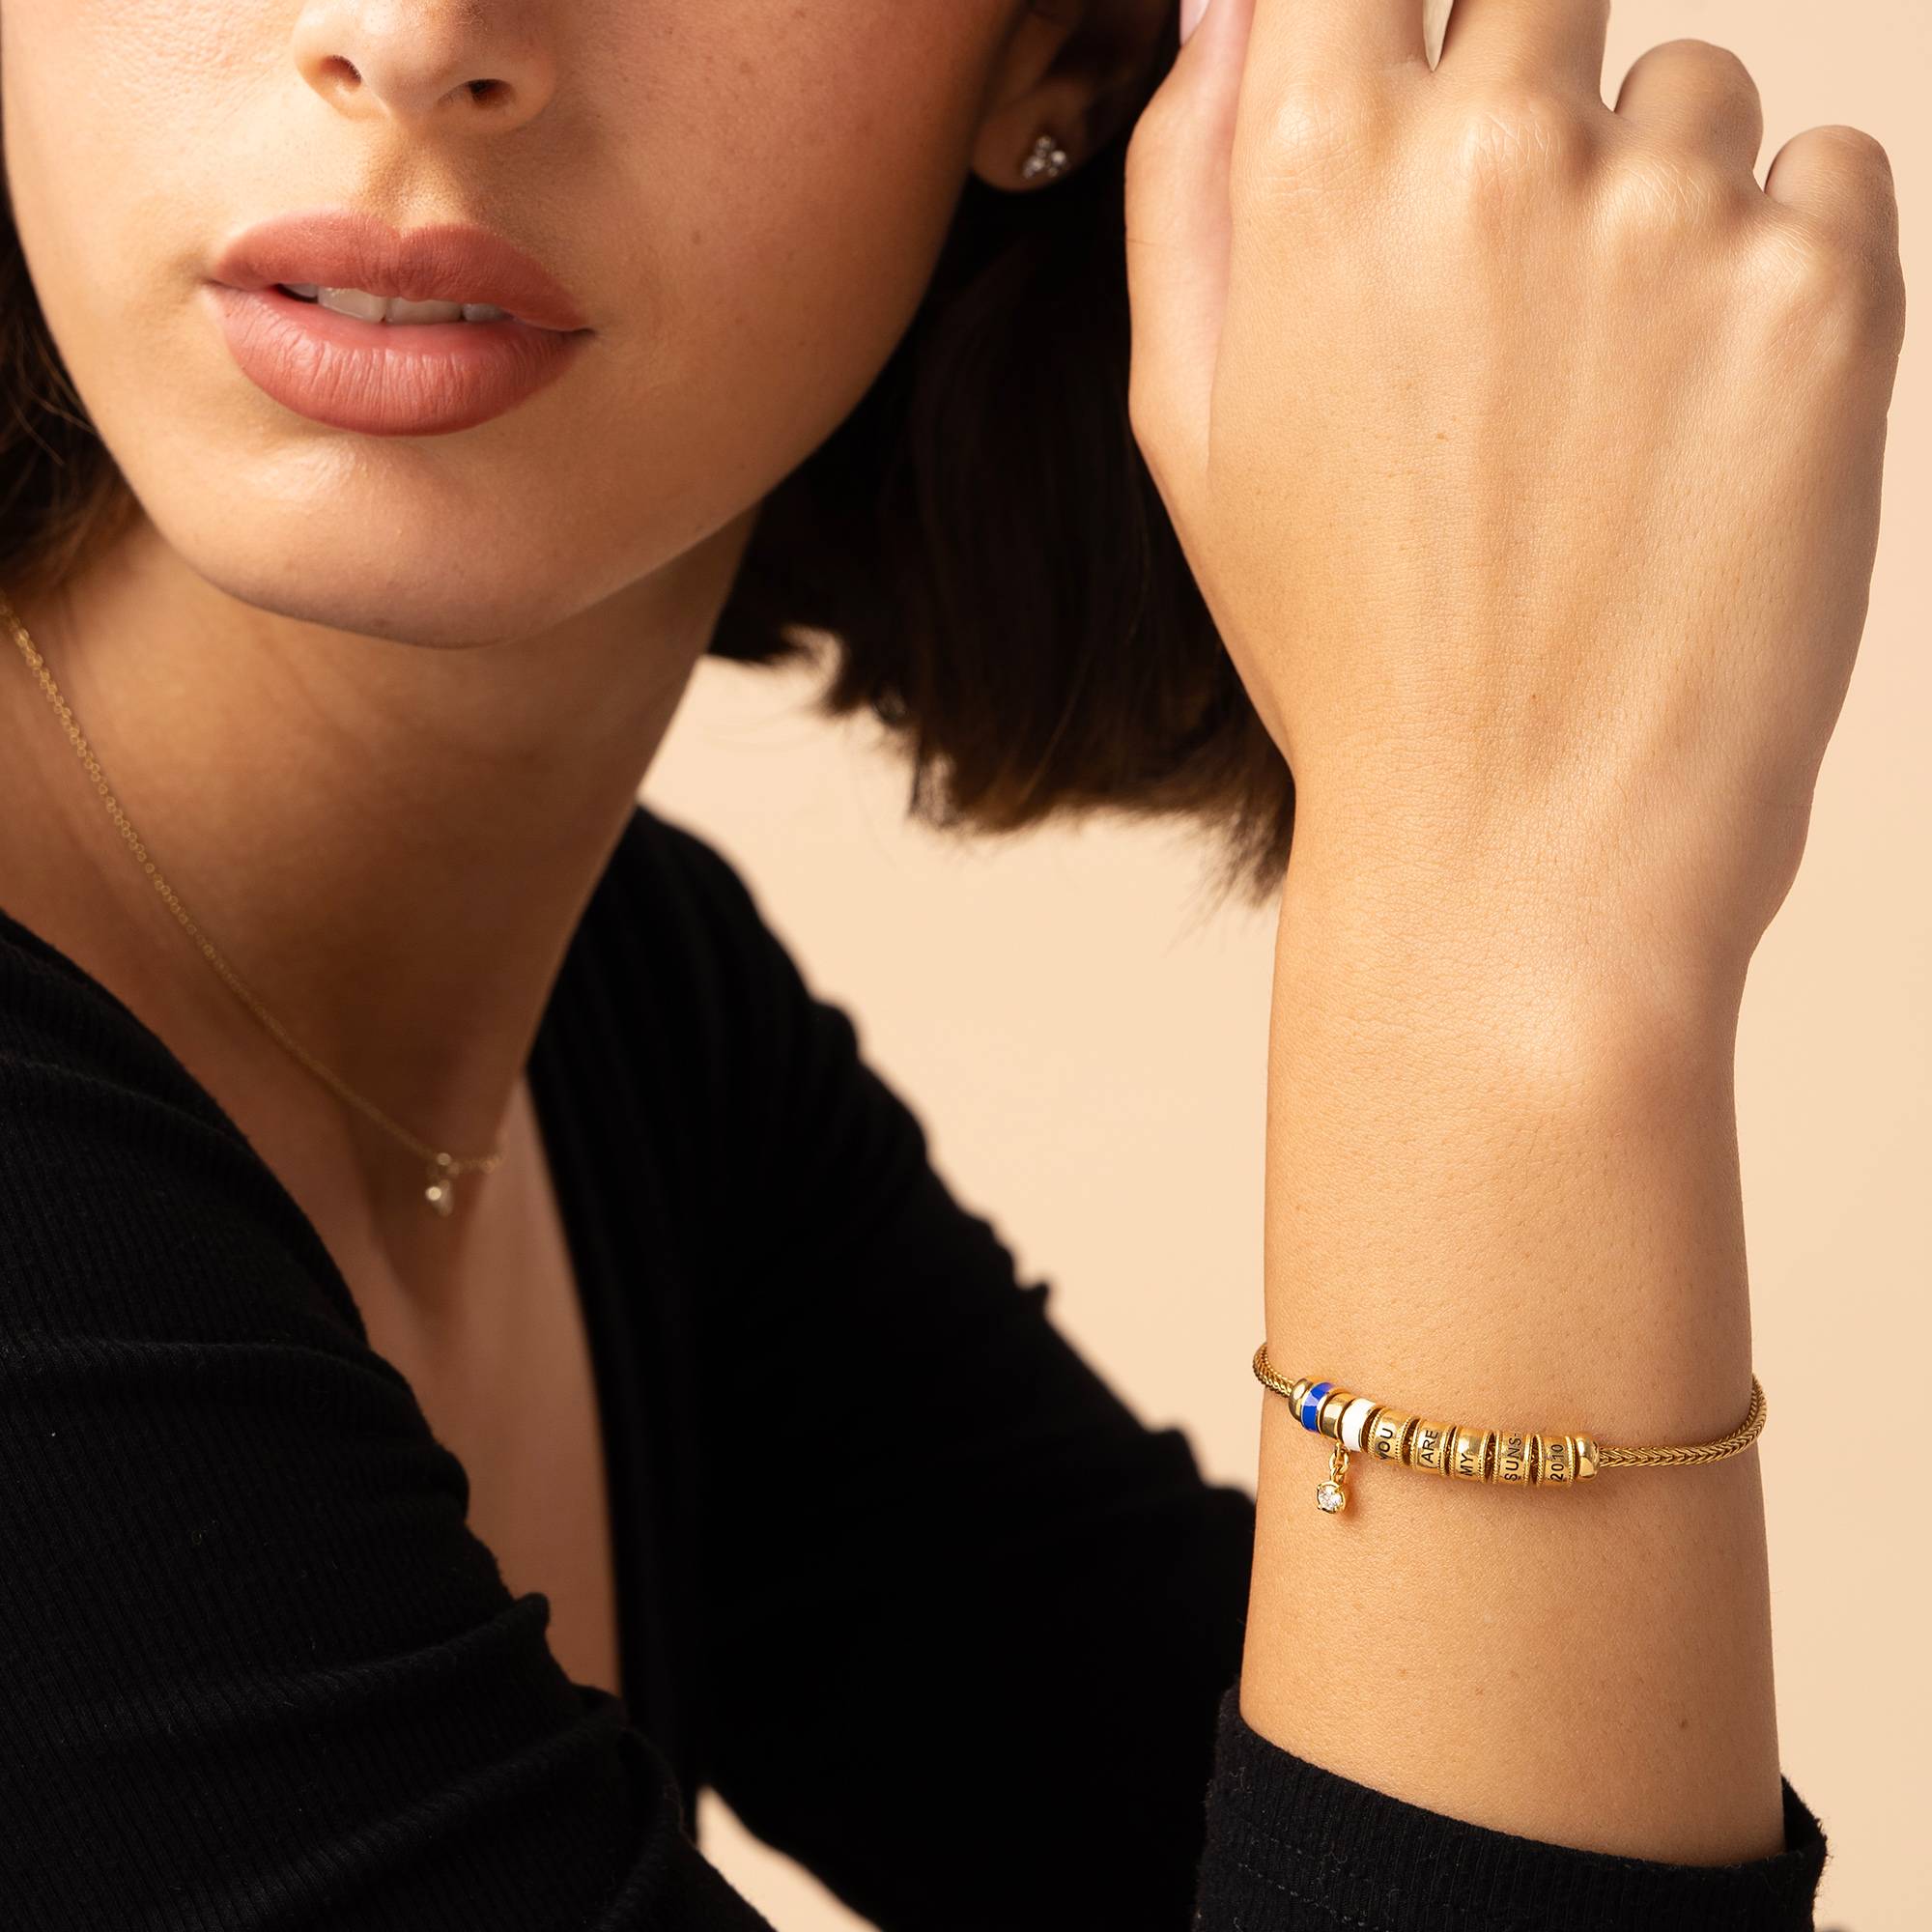 Linda Charm-Armband mit Herzverschluss, Perle und Emailleperlen - 750er Gold-Vermeil-3 Produktfoto